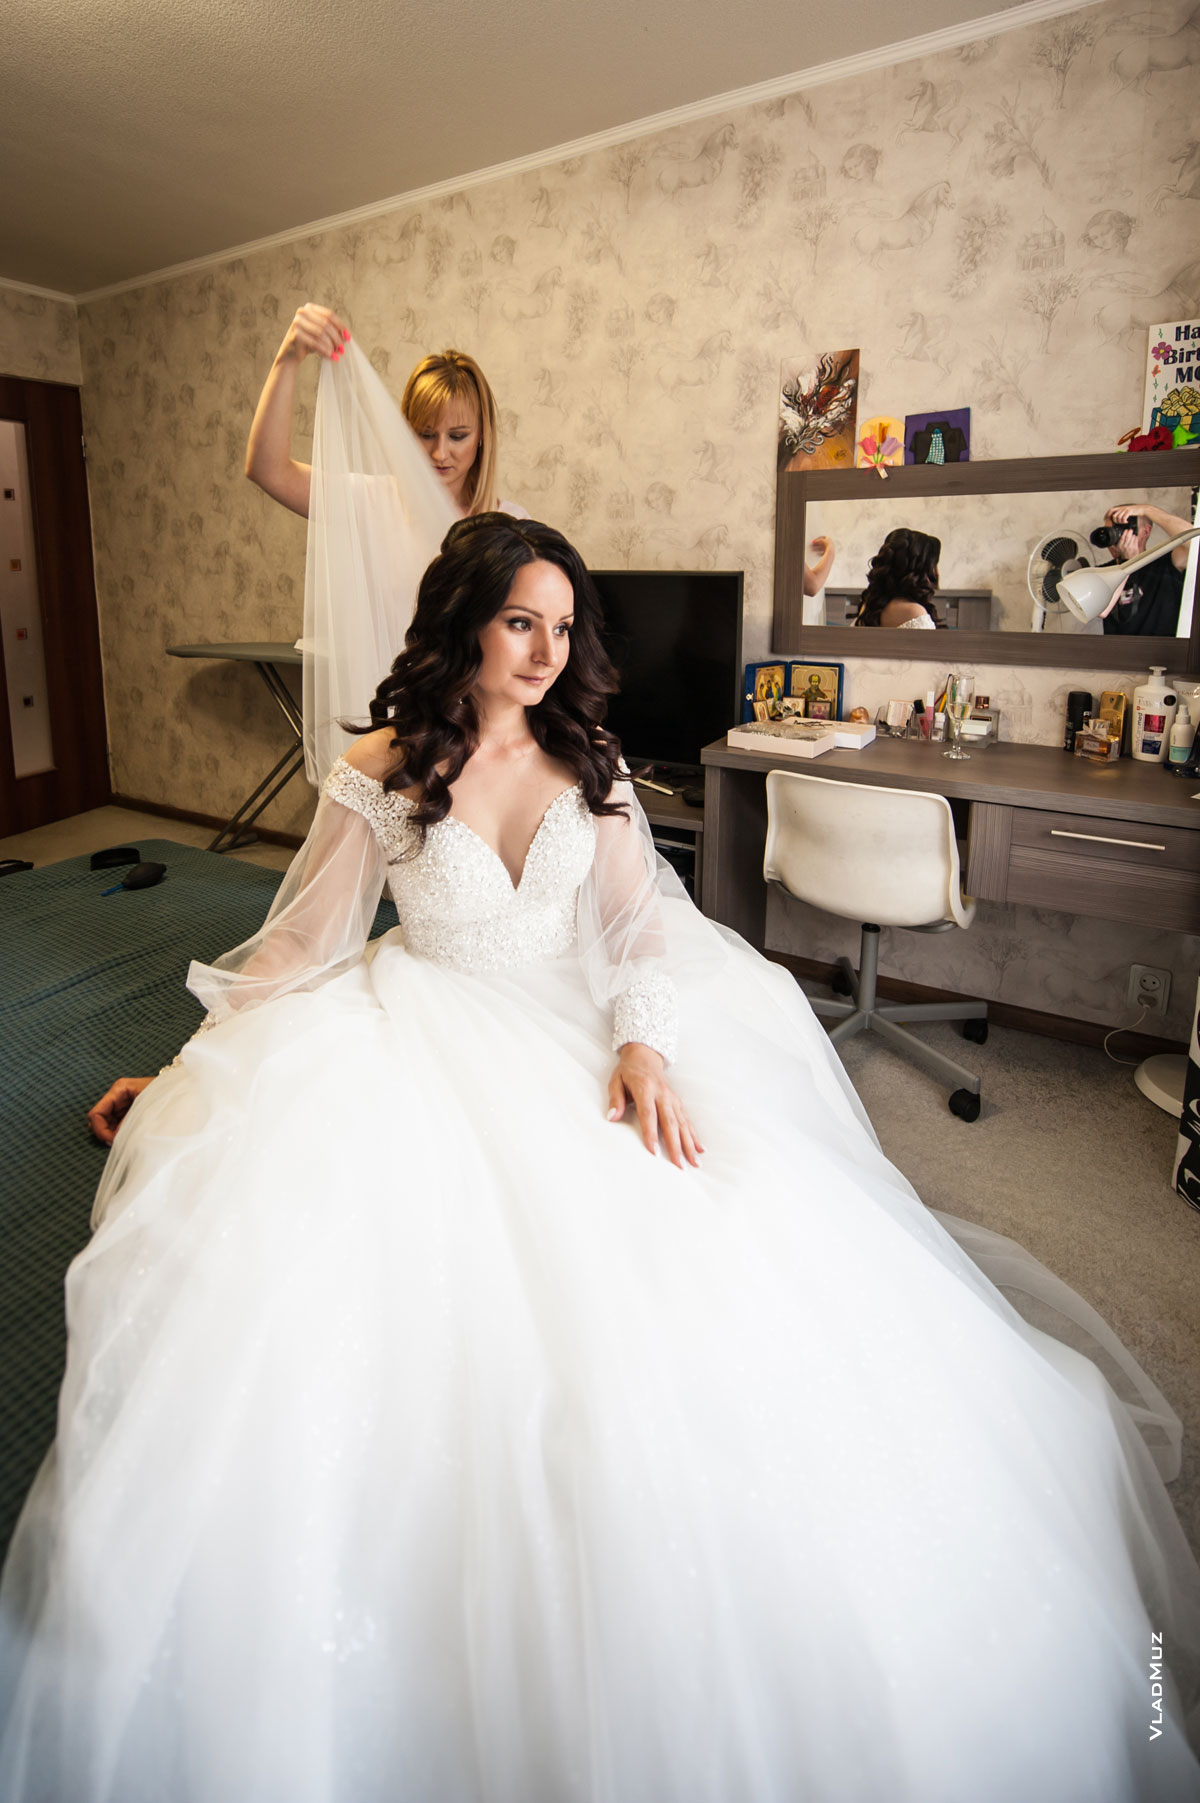 Фото невесты в свадебном платье во время подготовки к свадьбе